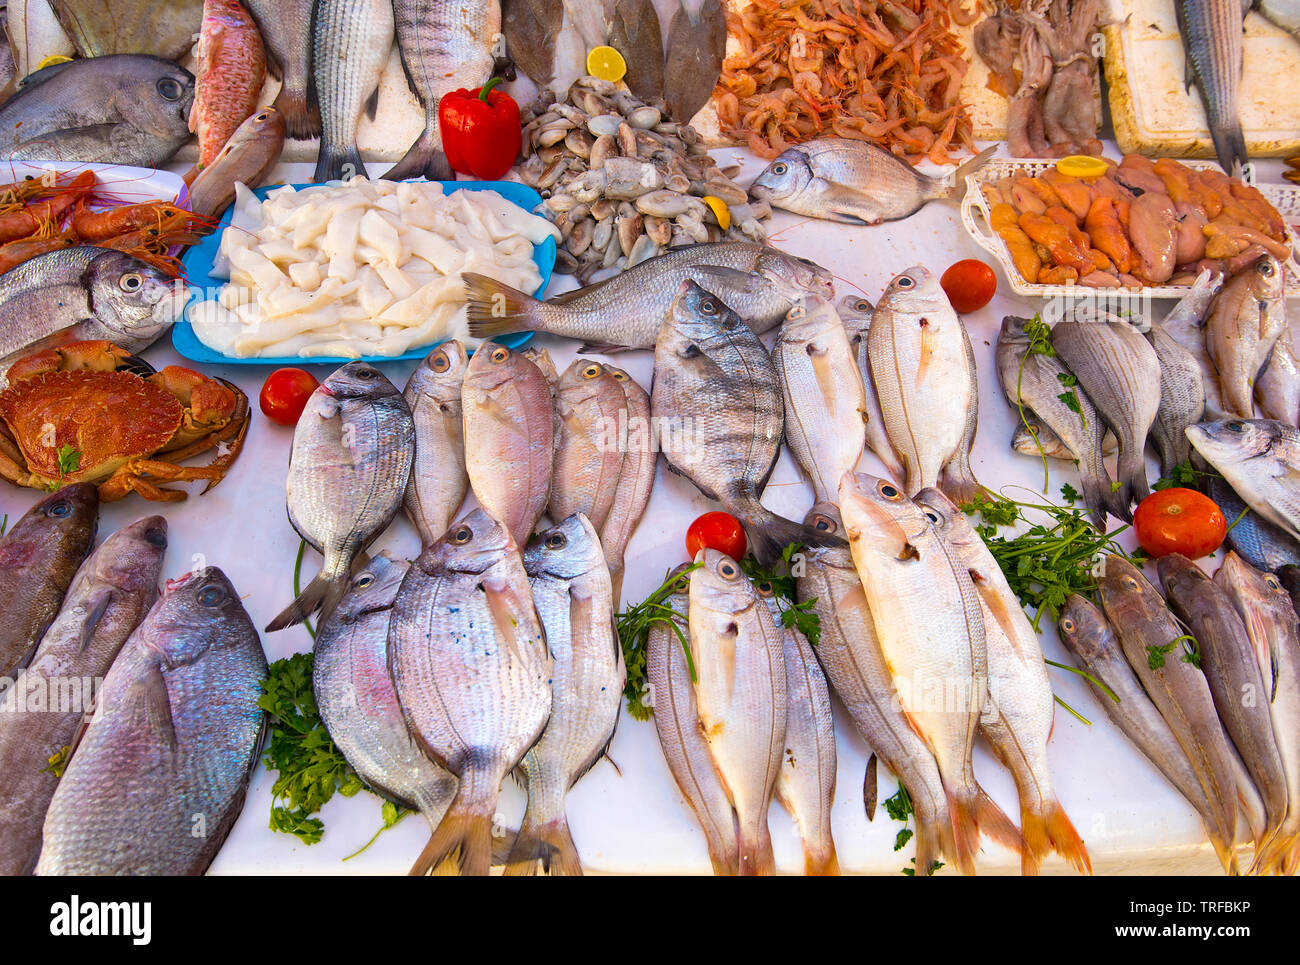 Verdadero mercado de pescado, marisco y pescado fresco del océano Atlántico en Marruecos Foto de stock